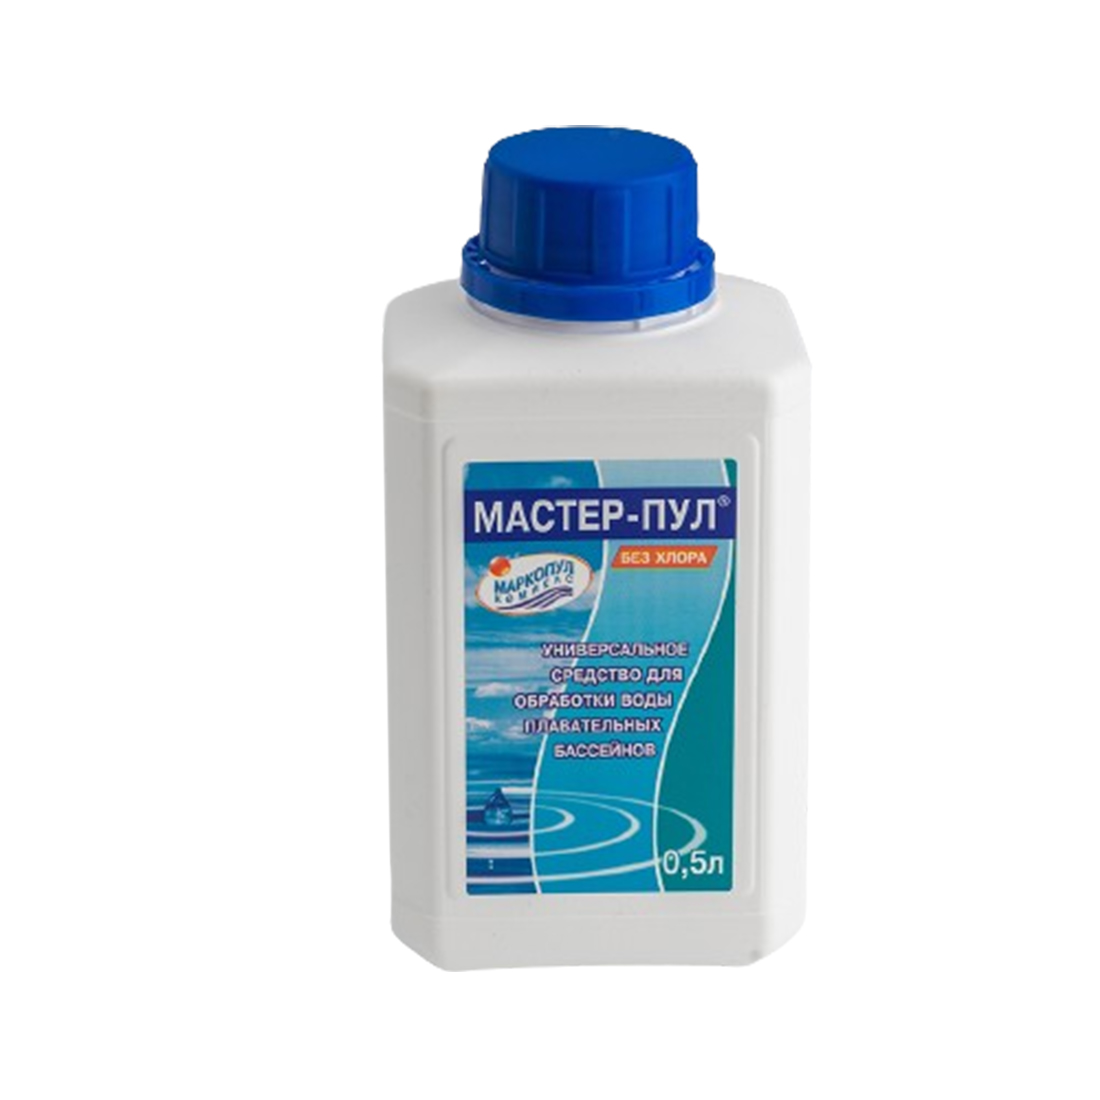 Химия для бассейна МАСТЕР-ПУЛ 0,5 литра